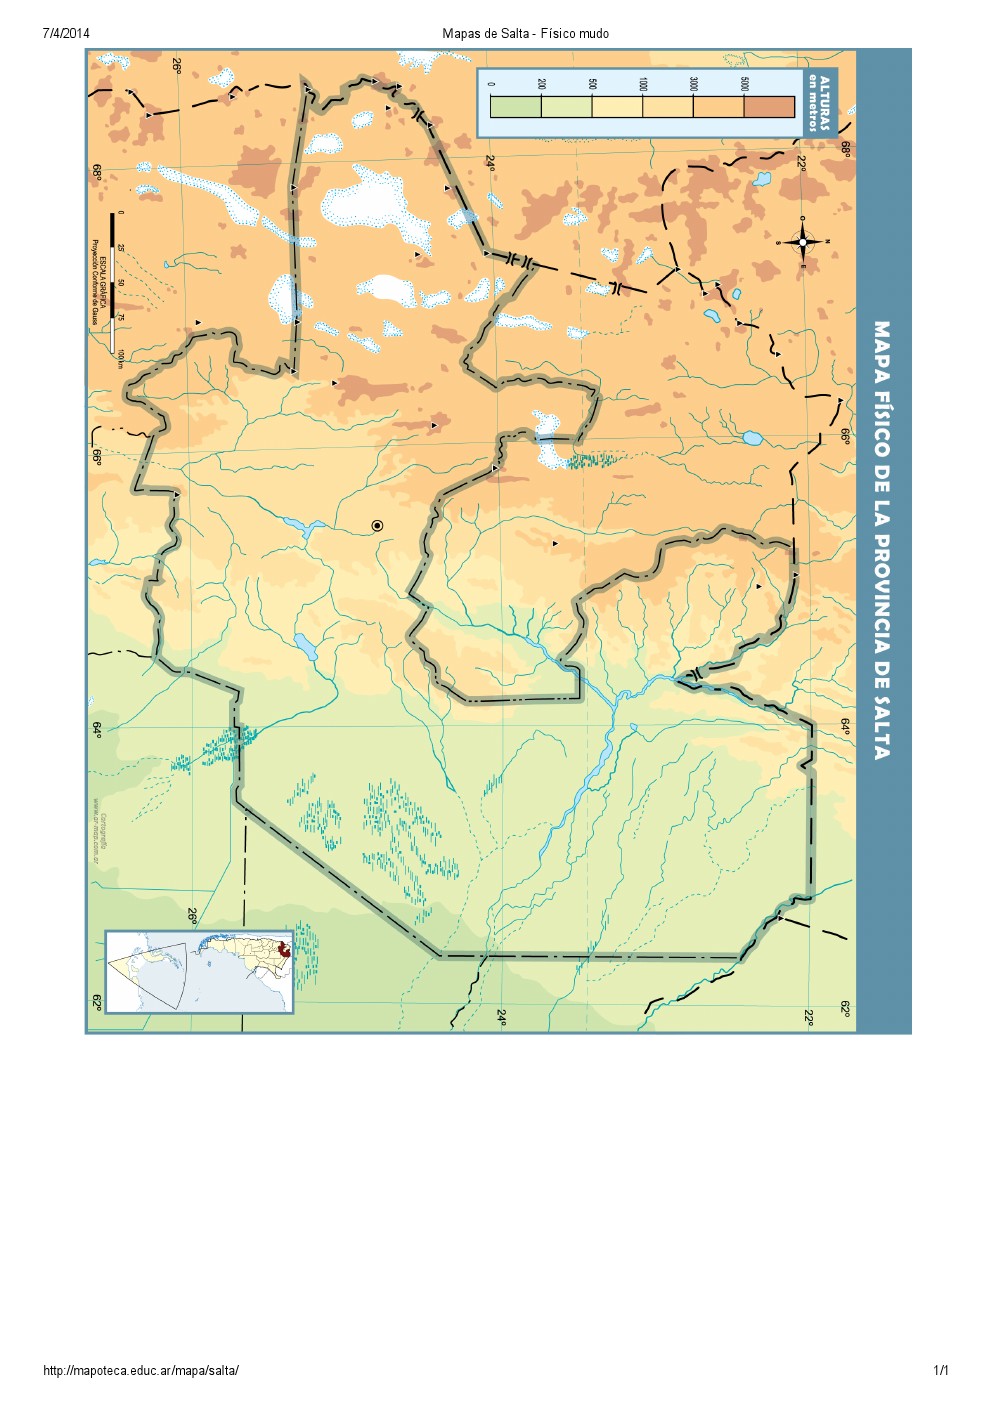 Mapa mudo de ríos de Salta. Mapoteca de Educ.ar